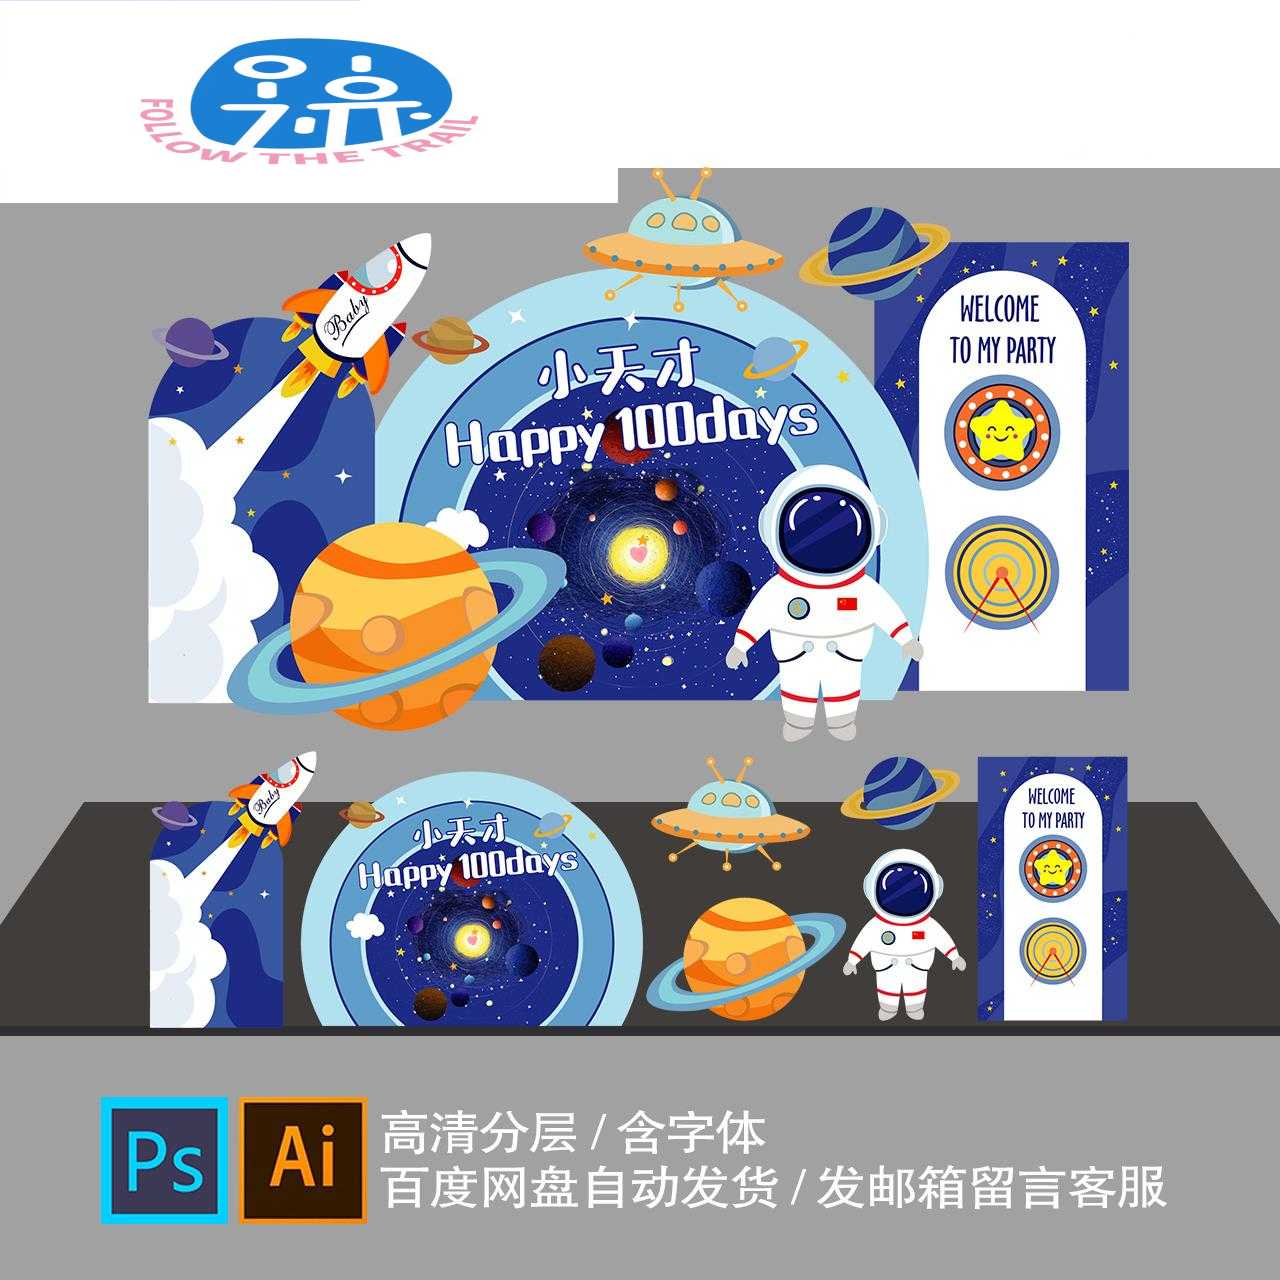 太空宇航员星球蓝色主题AI设计素材PS宝宝宴生日派对舞台迎宾背景